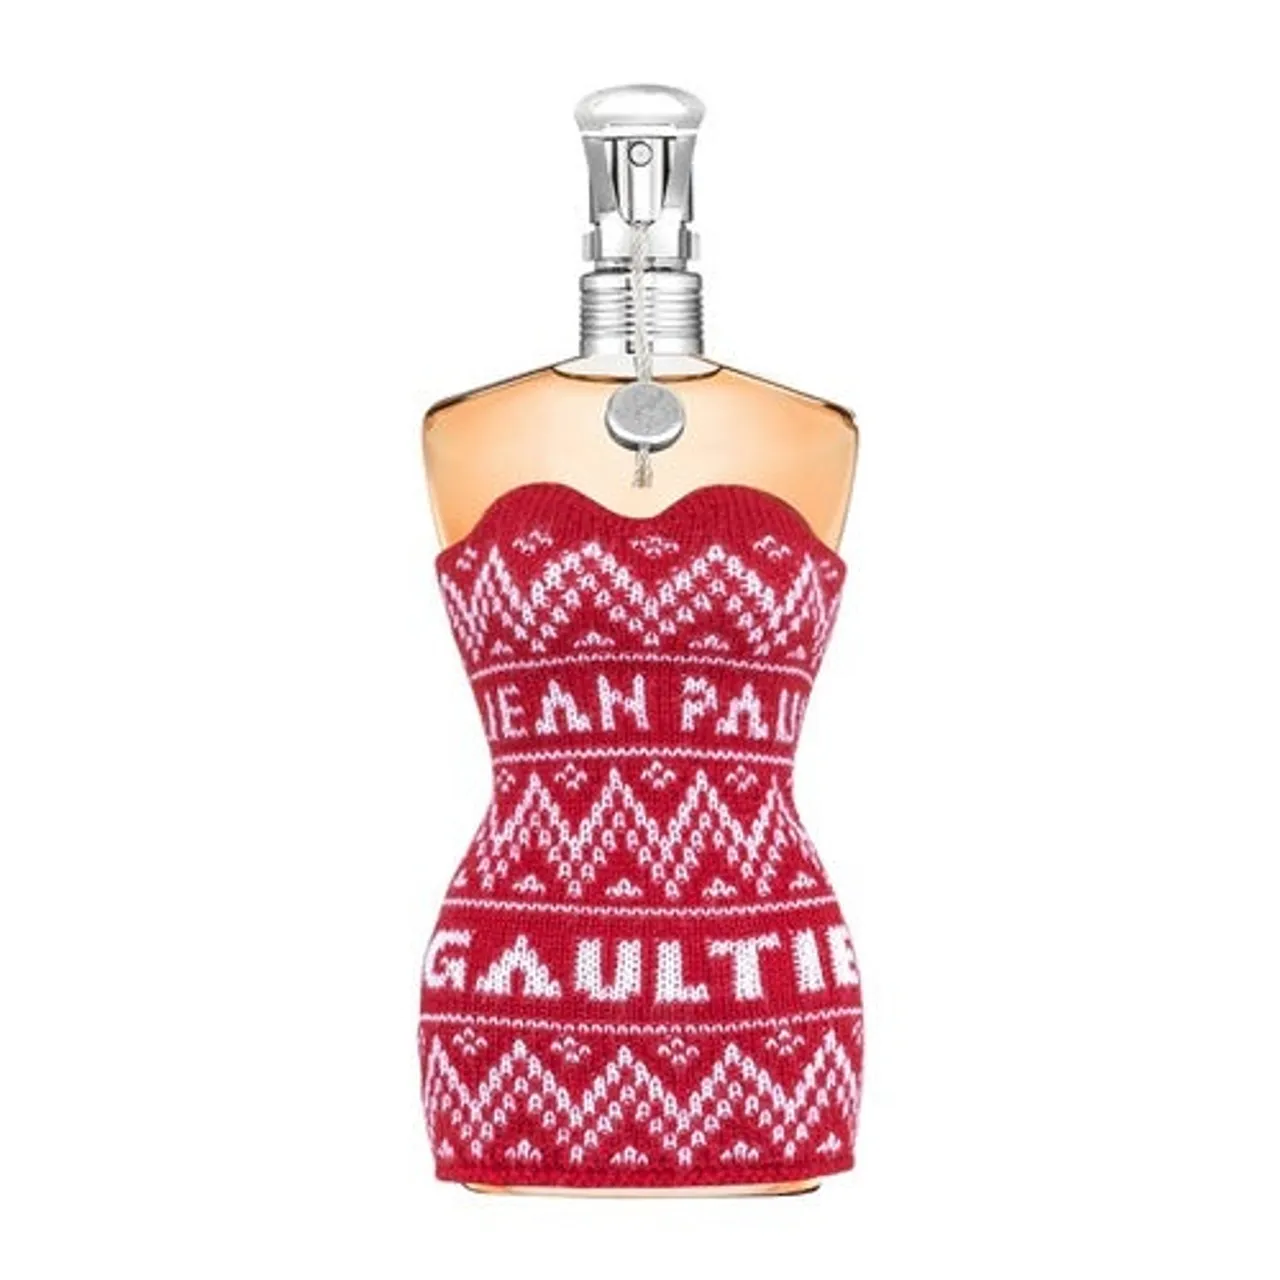 Jean Paul Gaultier Classique Collectors Edition 2021 Eau de Toilette 100 ml